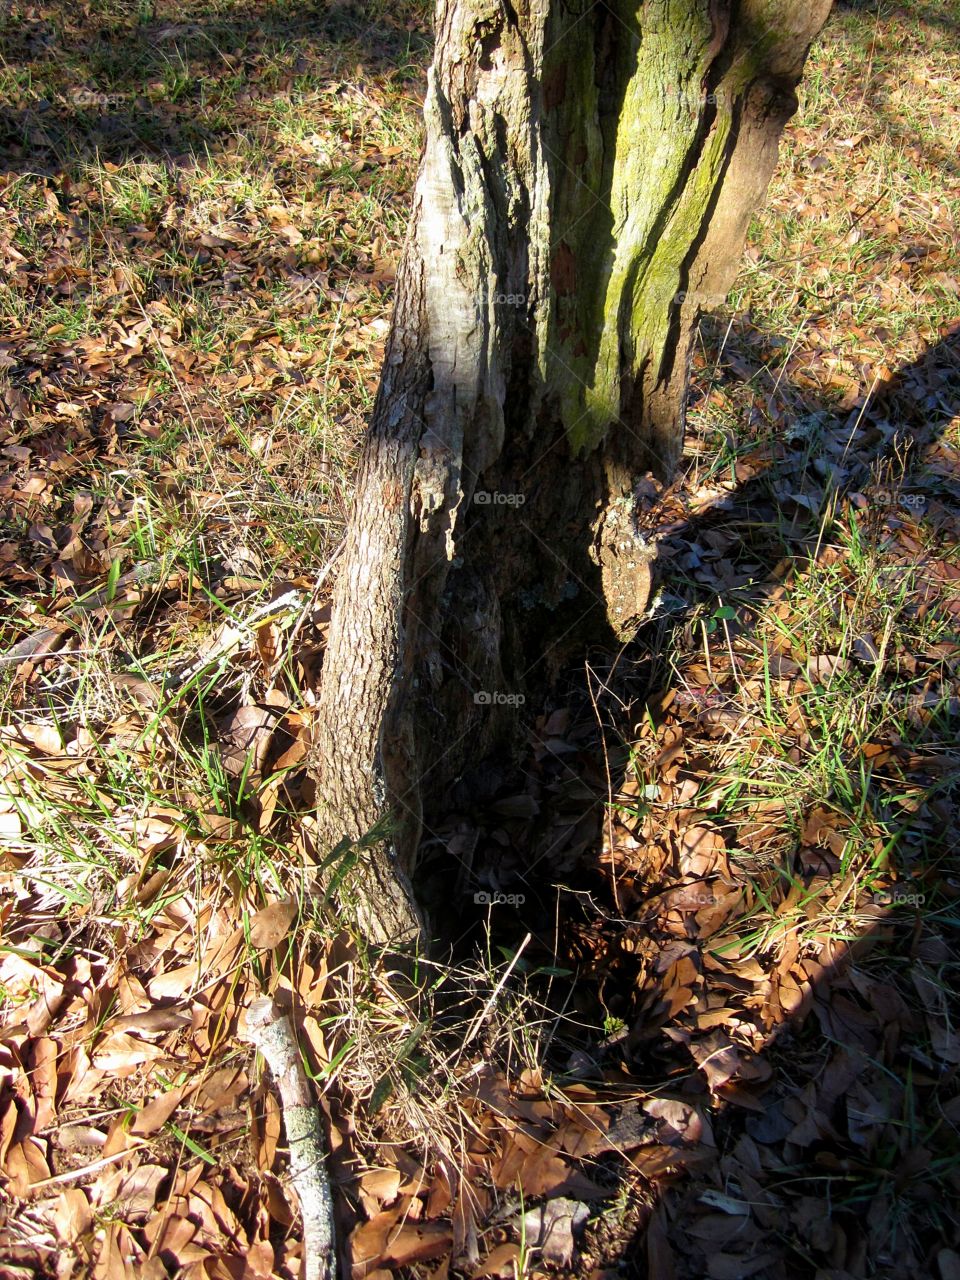 tree stump with lichen